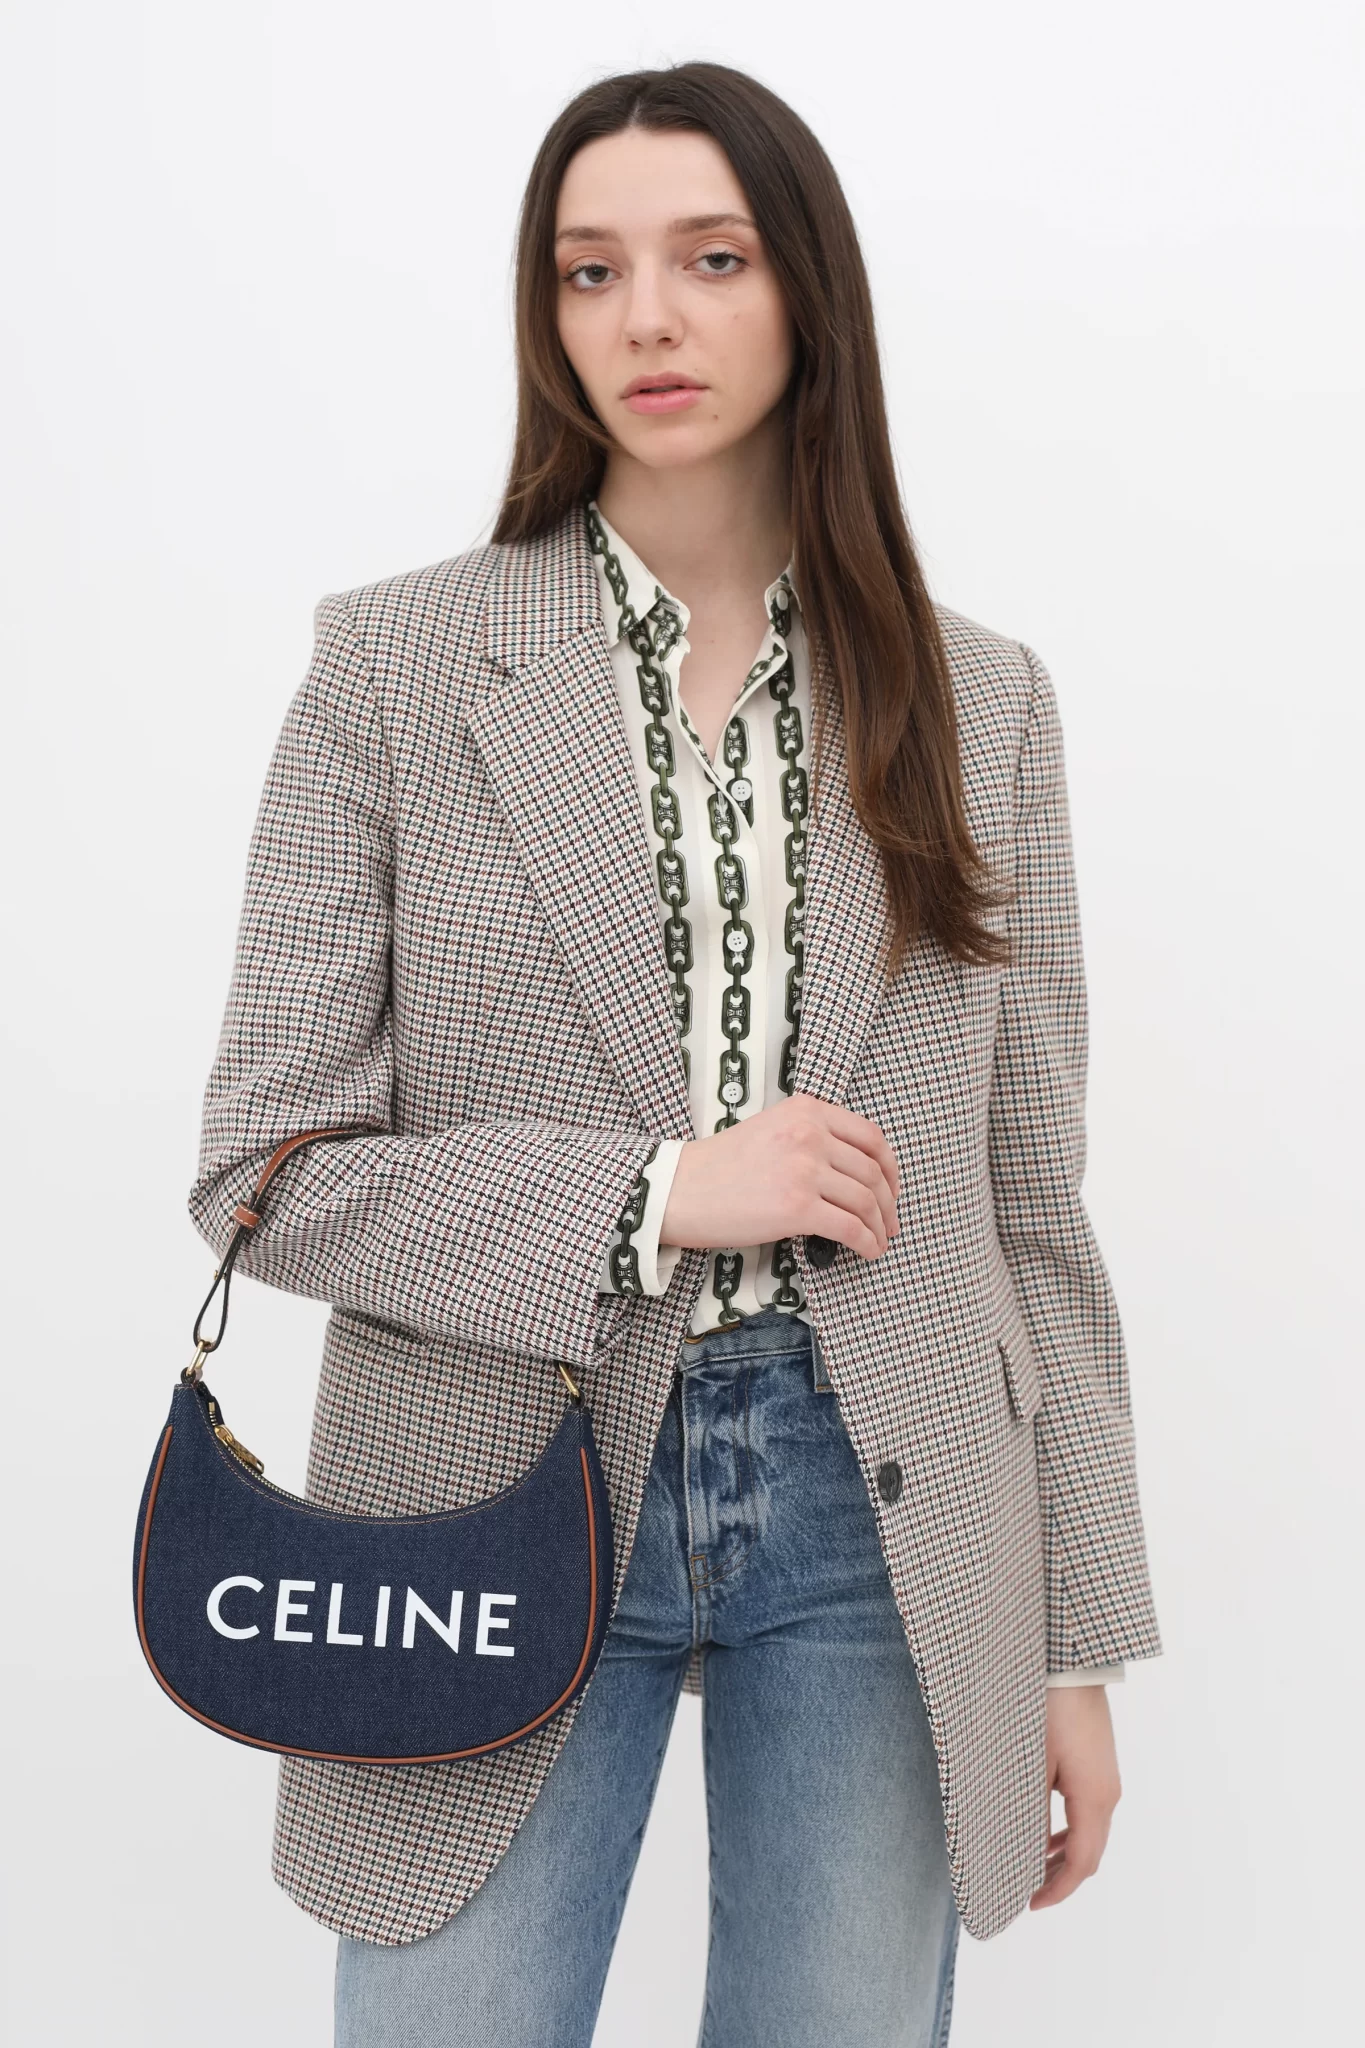 Celine Ava Bag in Denim & Calfskin